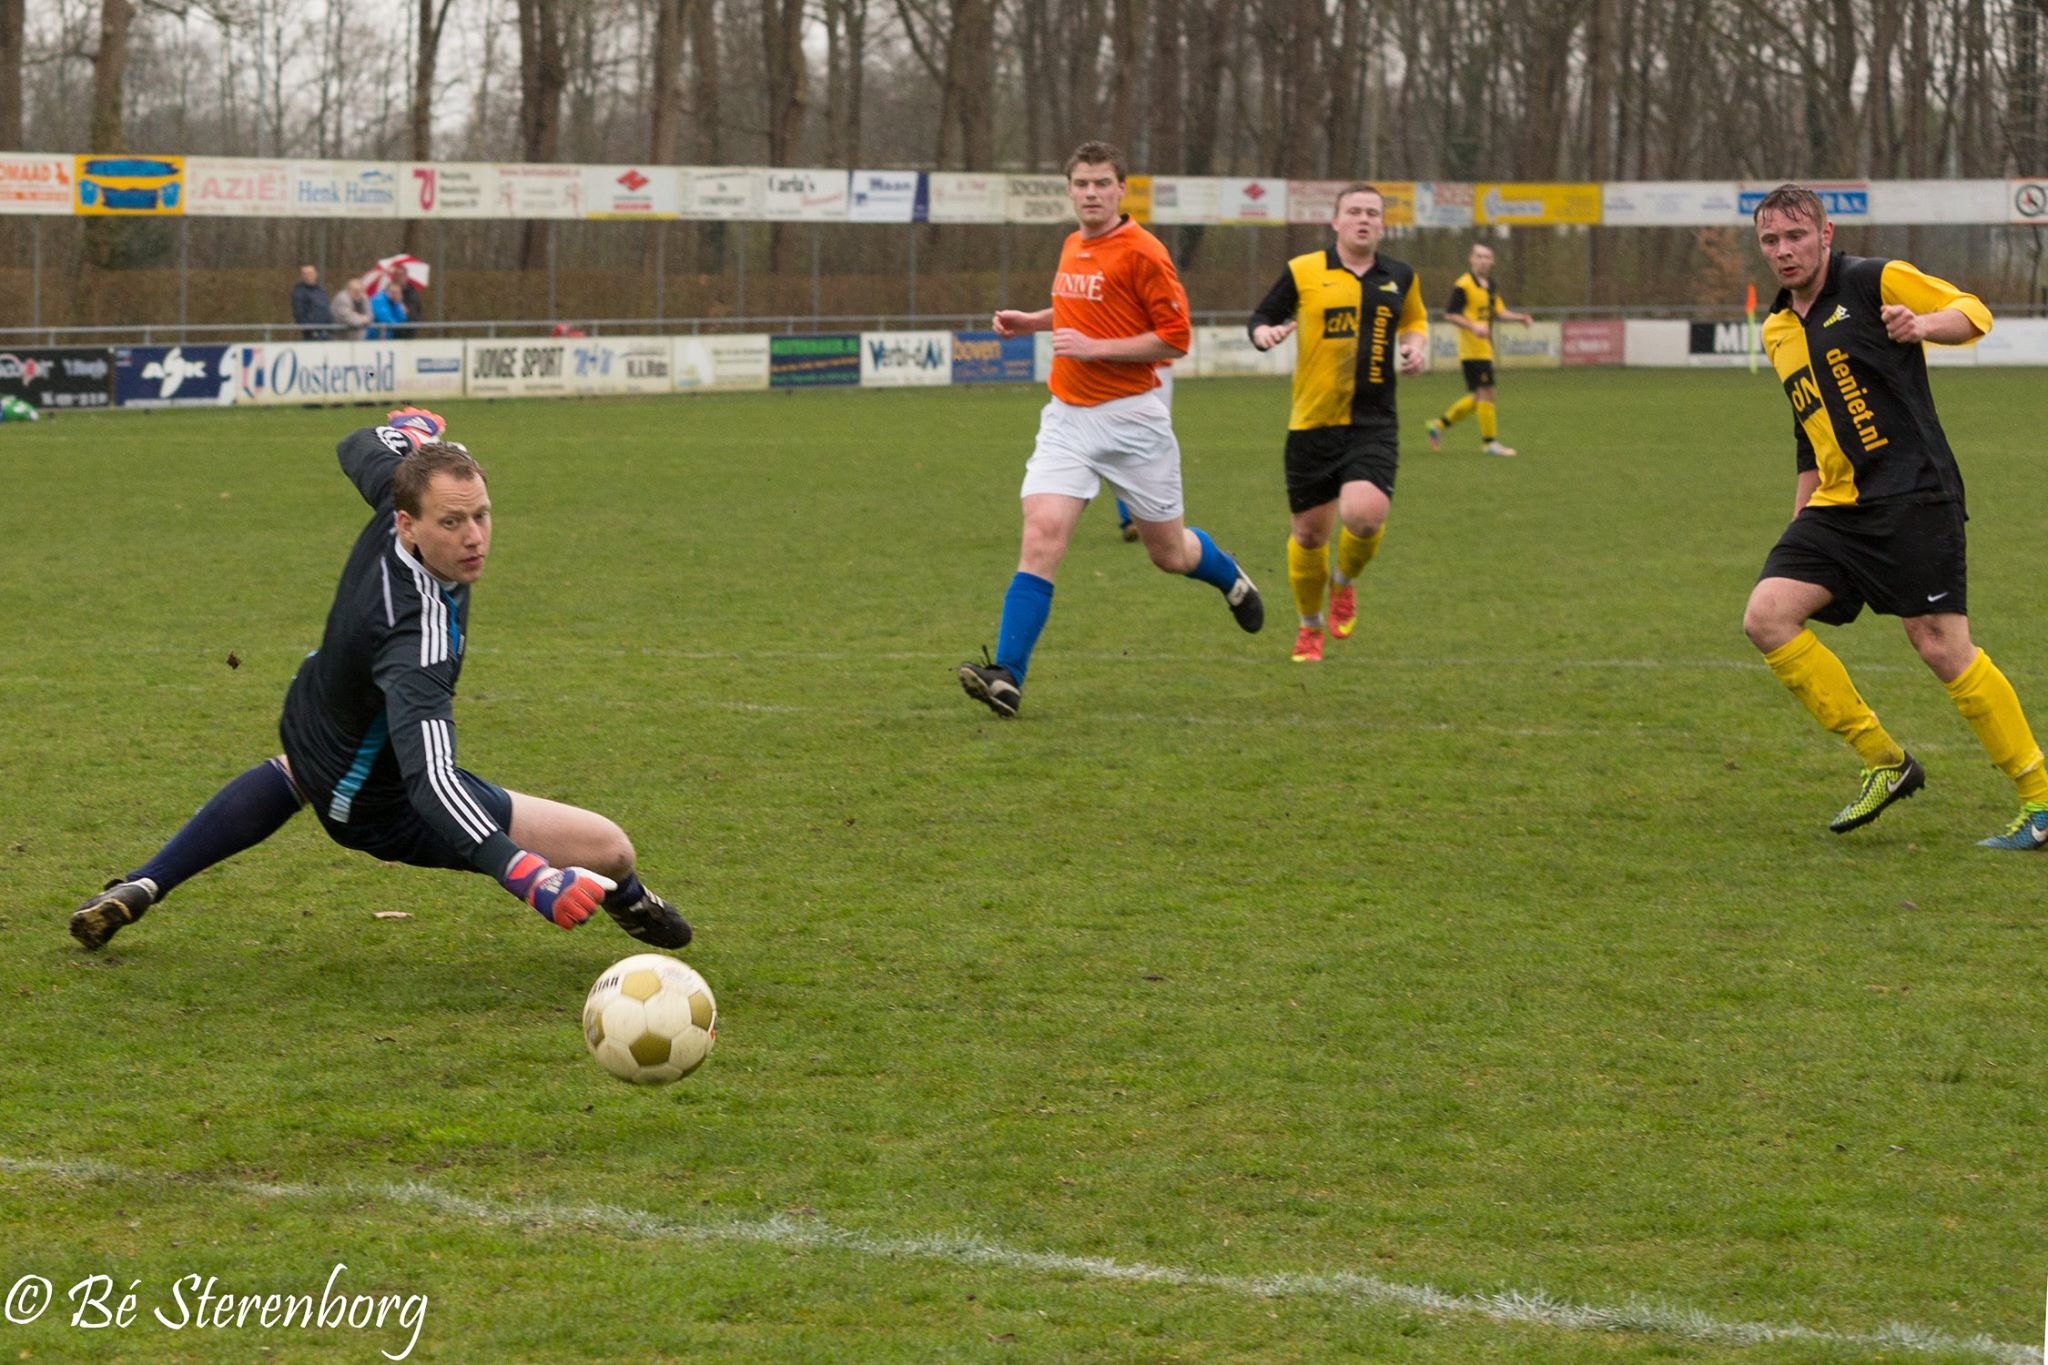 Rein Koudstaal kijkt een bal naast het doel... (foto: Bé Sterenborg)